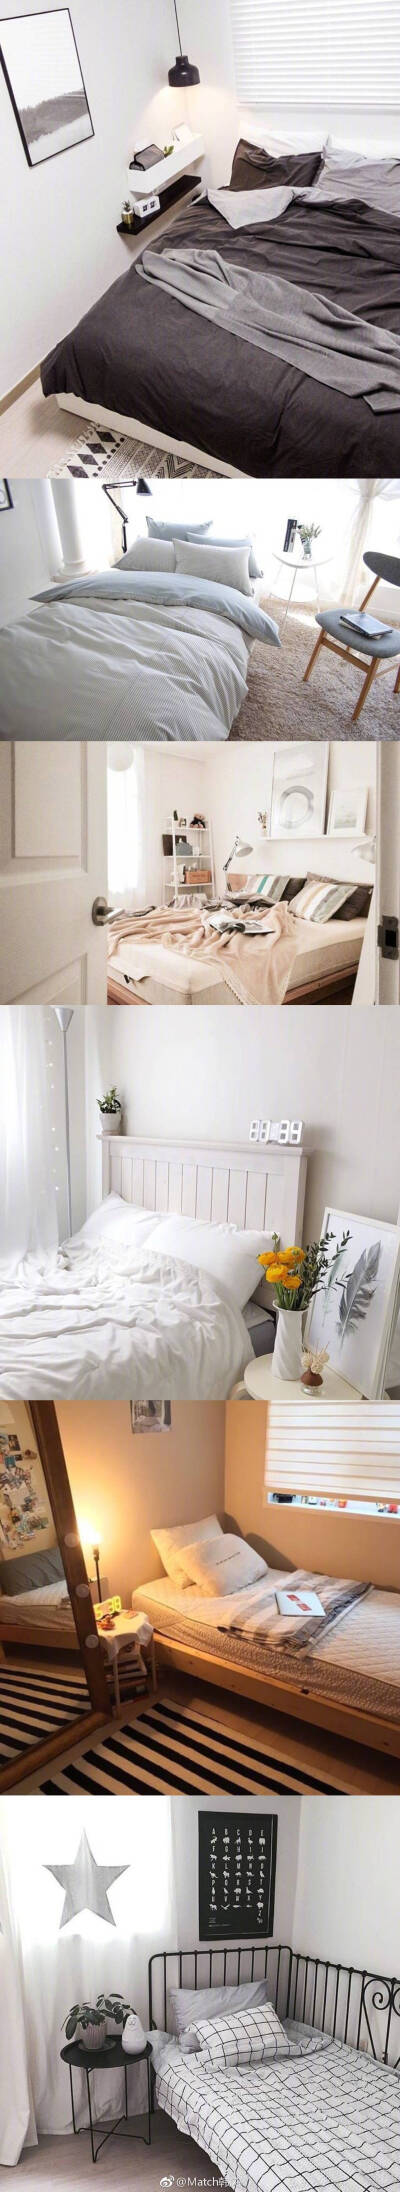 卧室 室内设计 北欧 图源水印